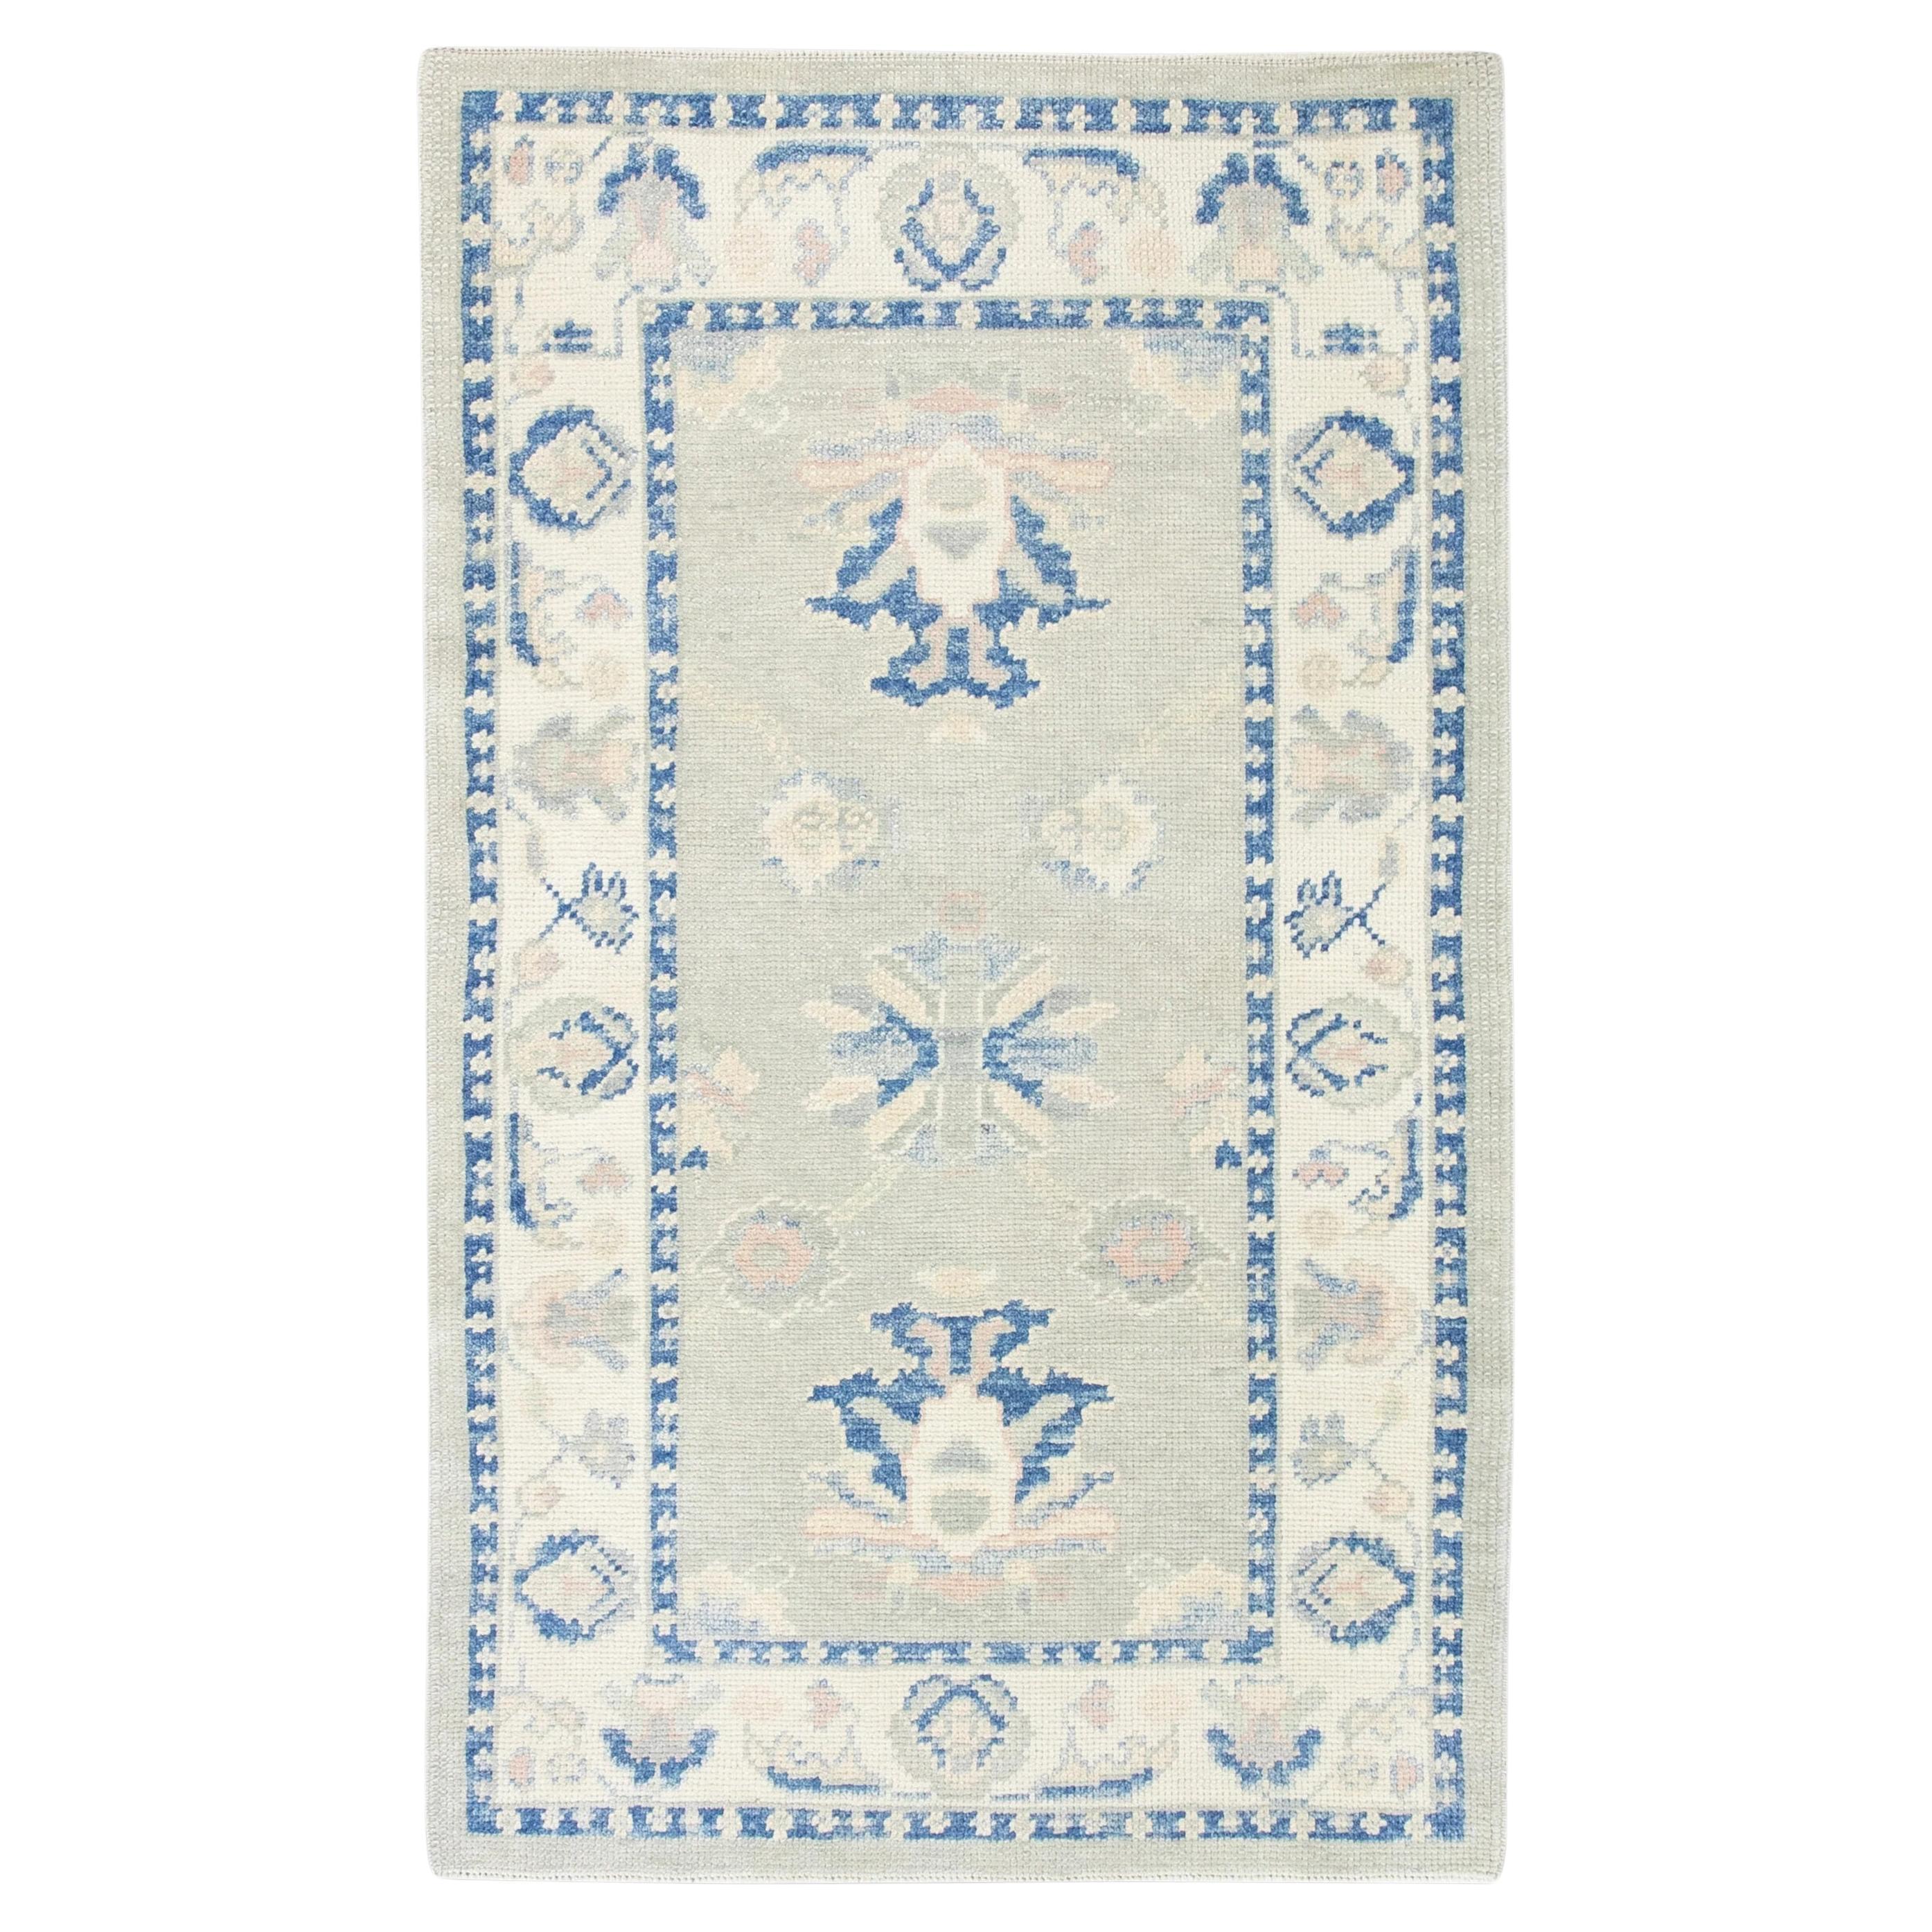 Grüner handgewebter türkischer Oushak-Teppich aus Wolle mit blauem Blumenmuster 3' x 4'11"